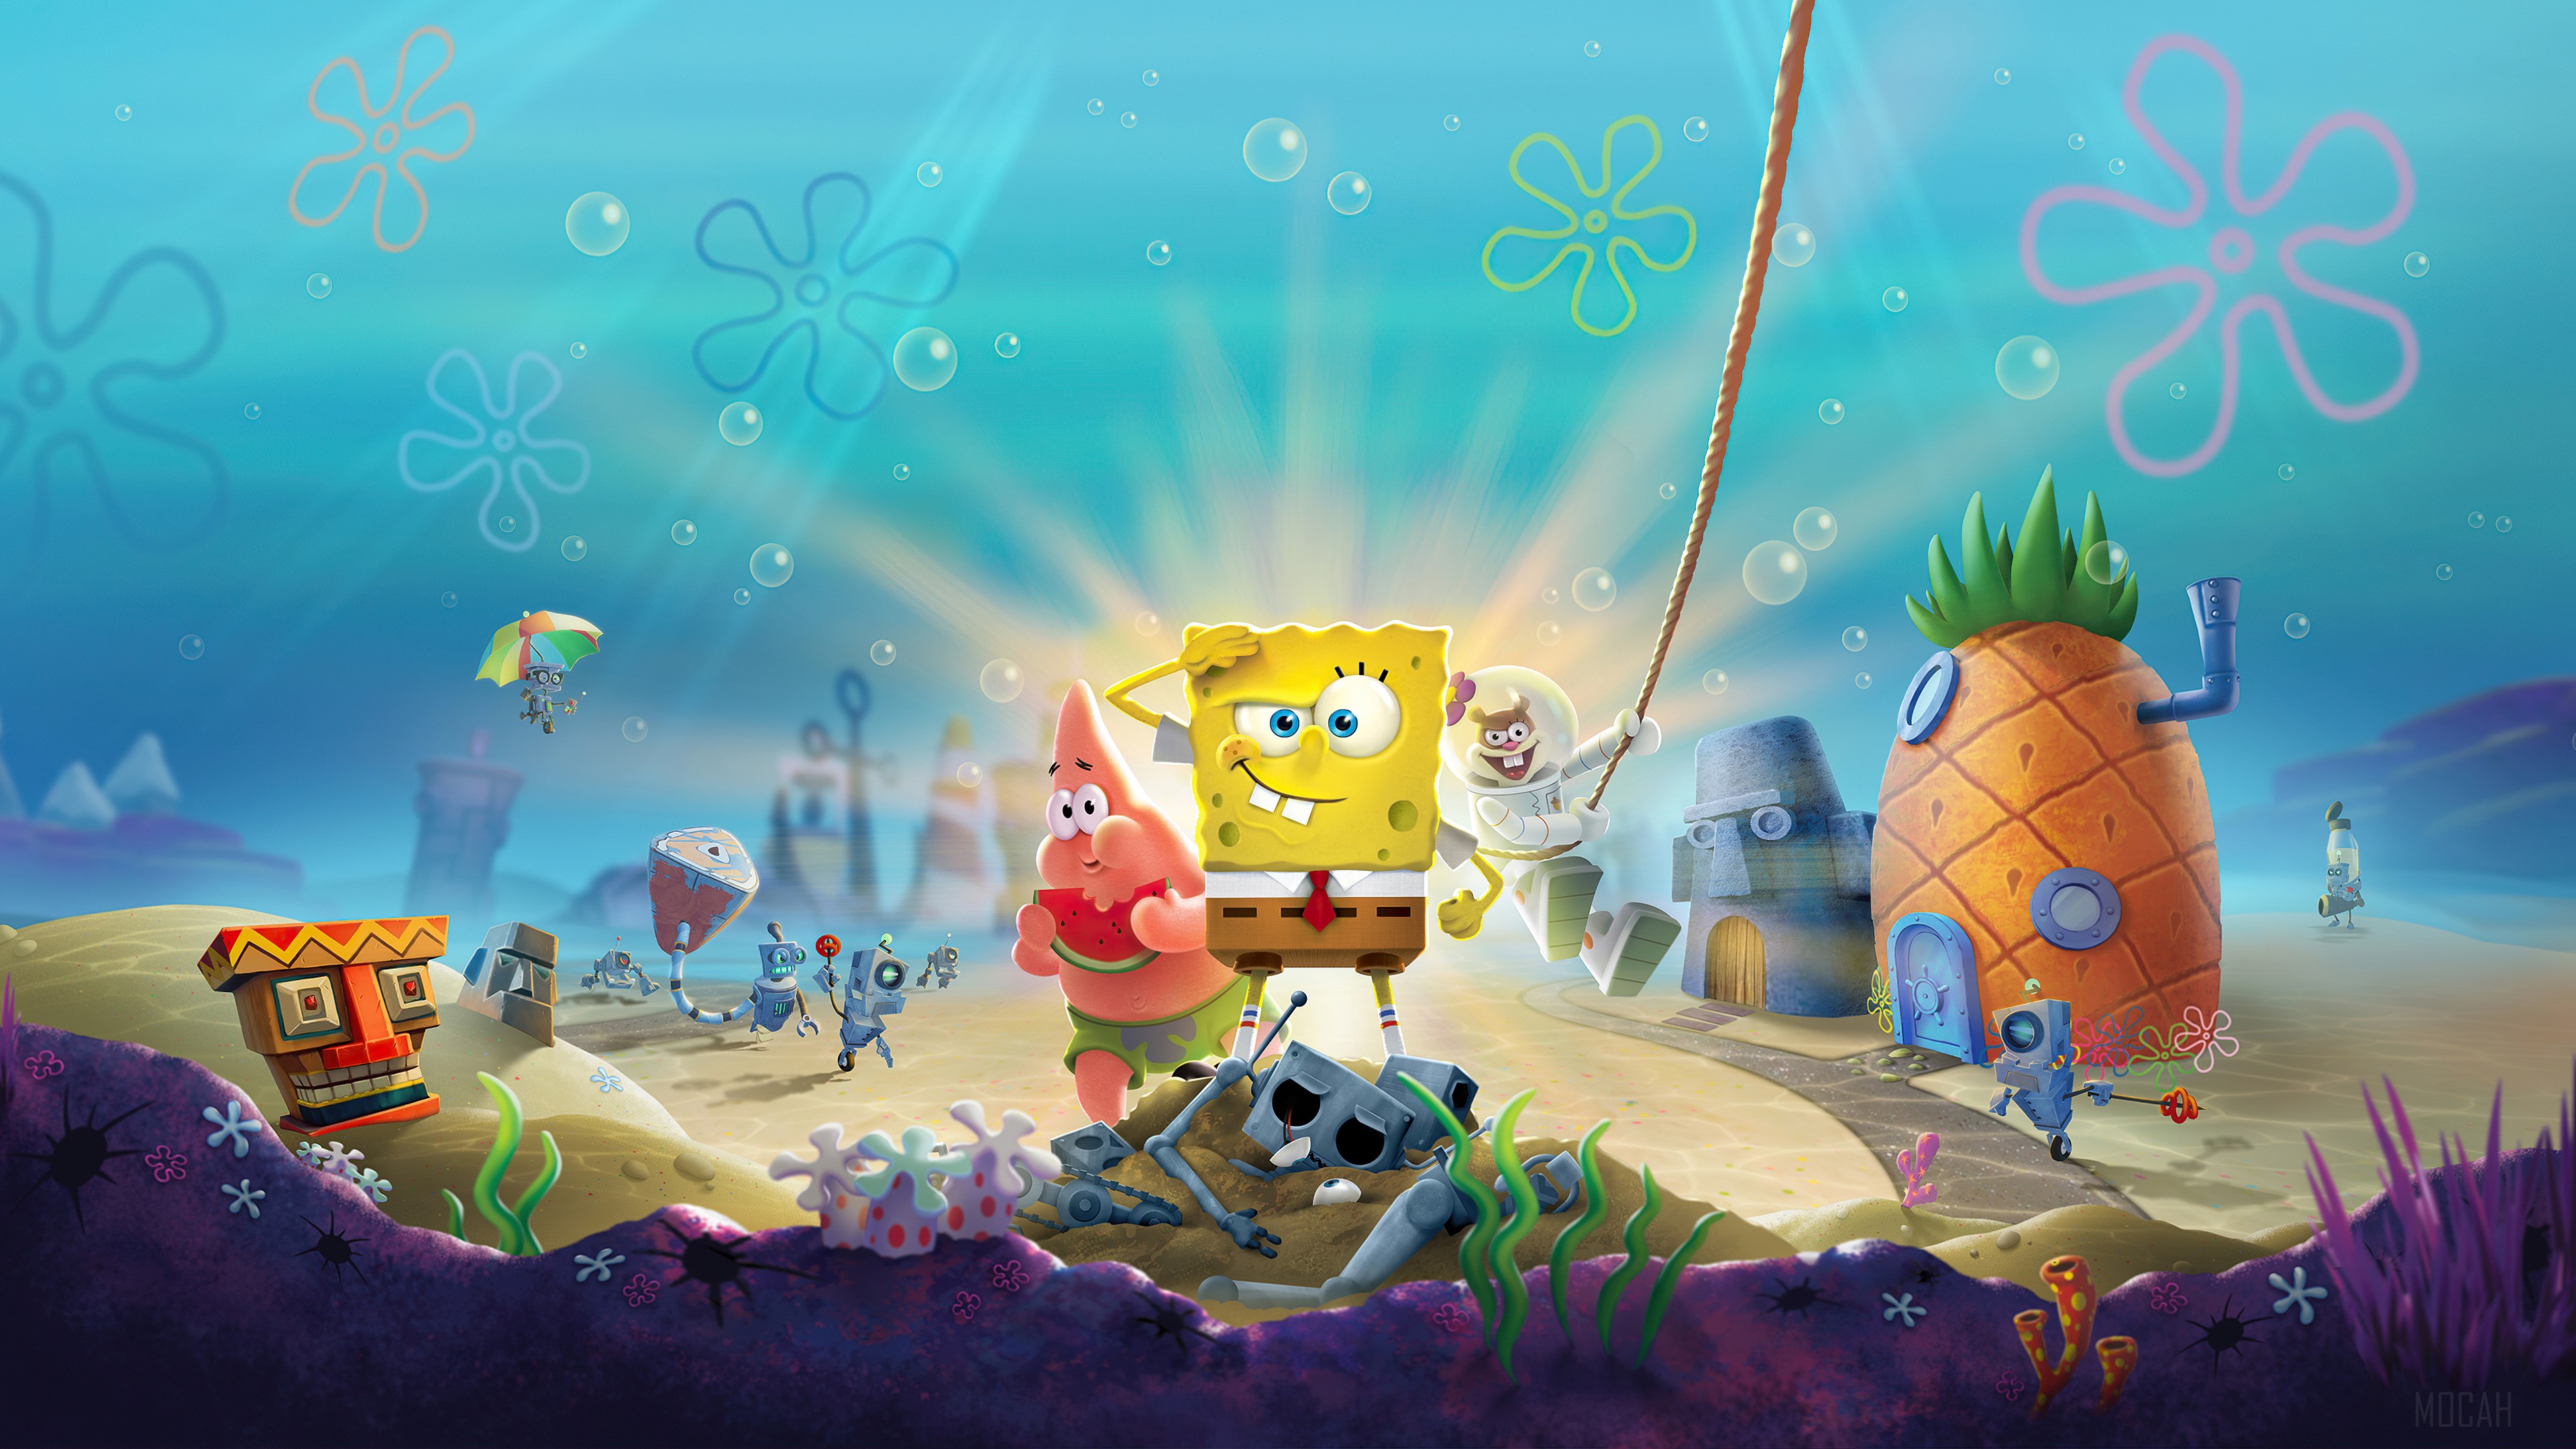 Full HD spongebob squarepants wallpaper